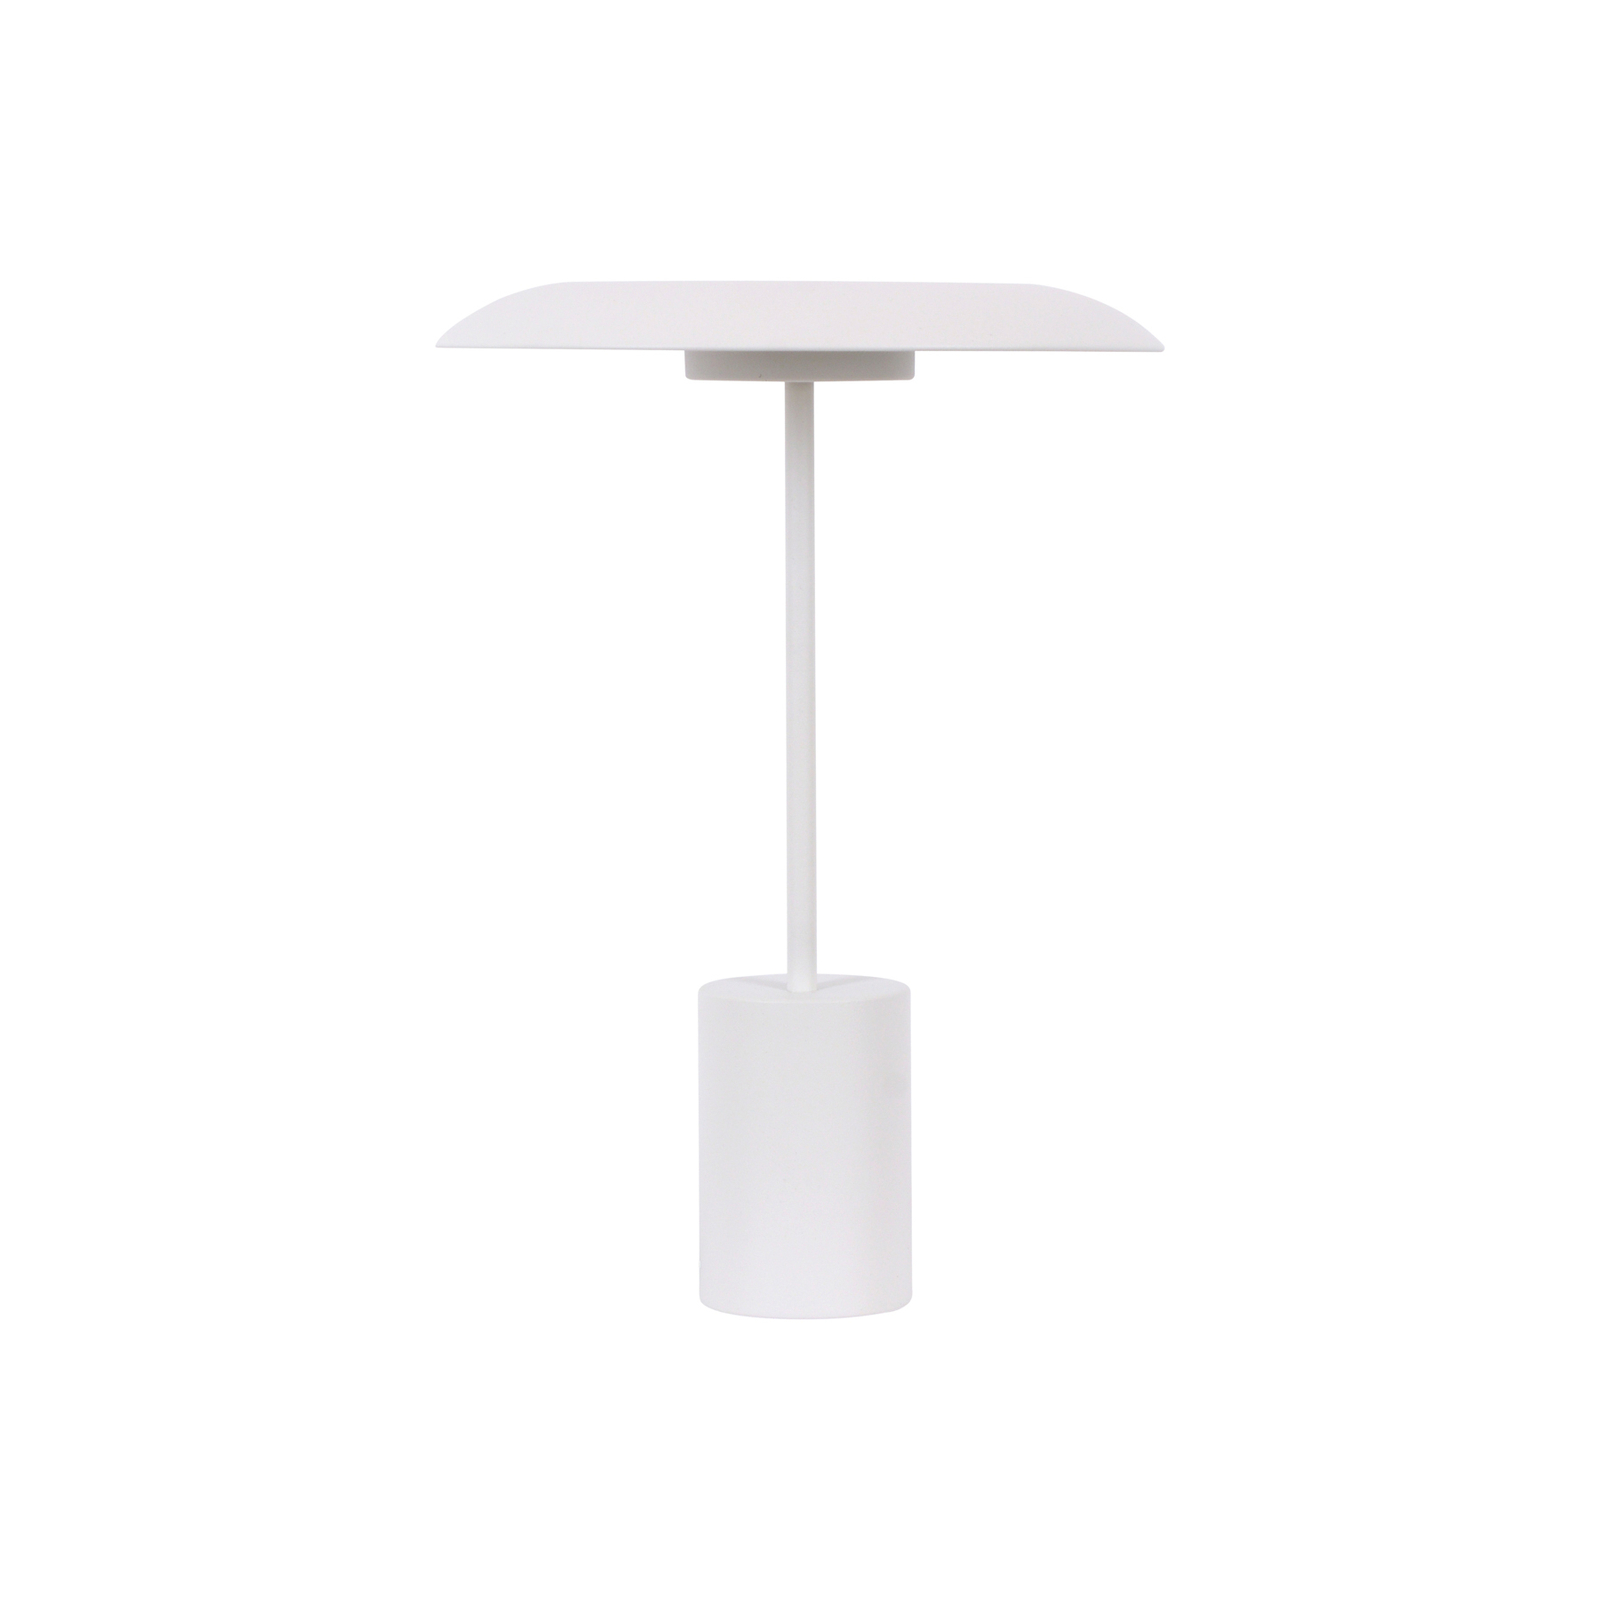 Beacon LED table lamp Smith, white, metal, USB port